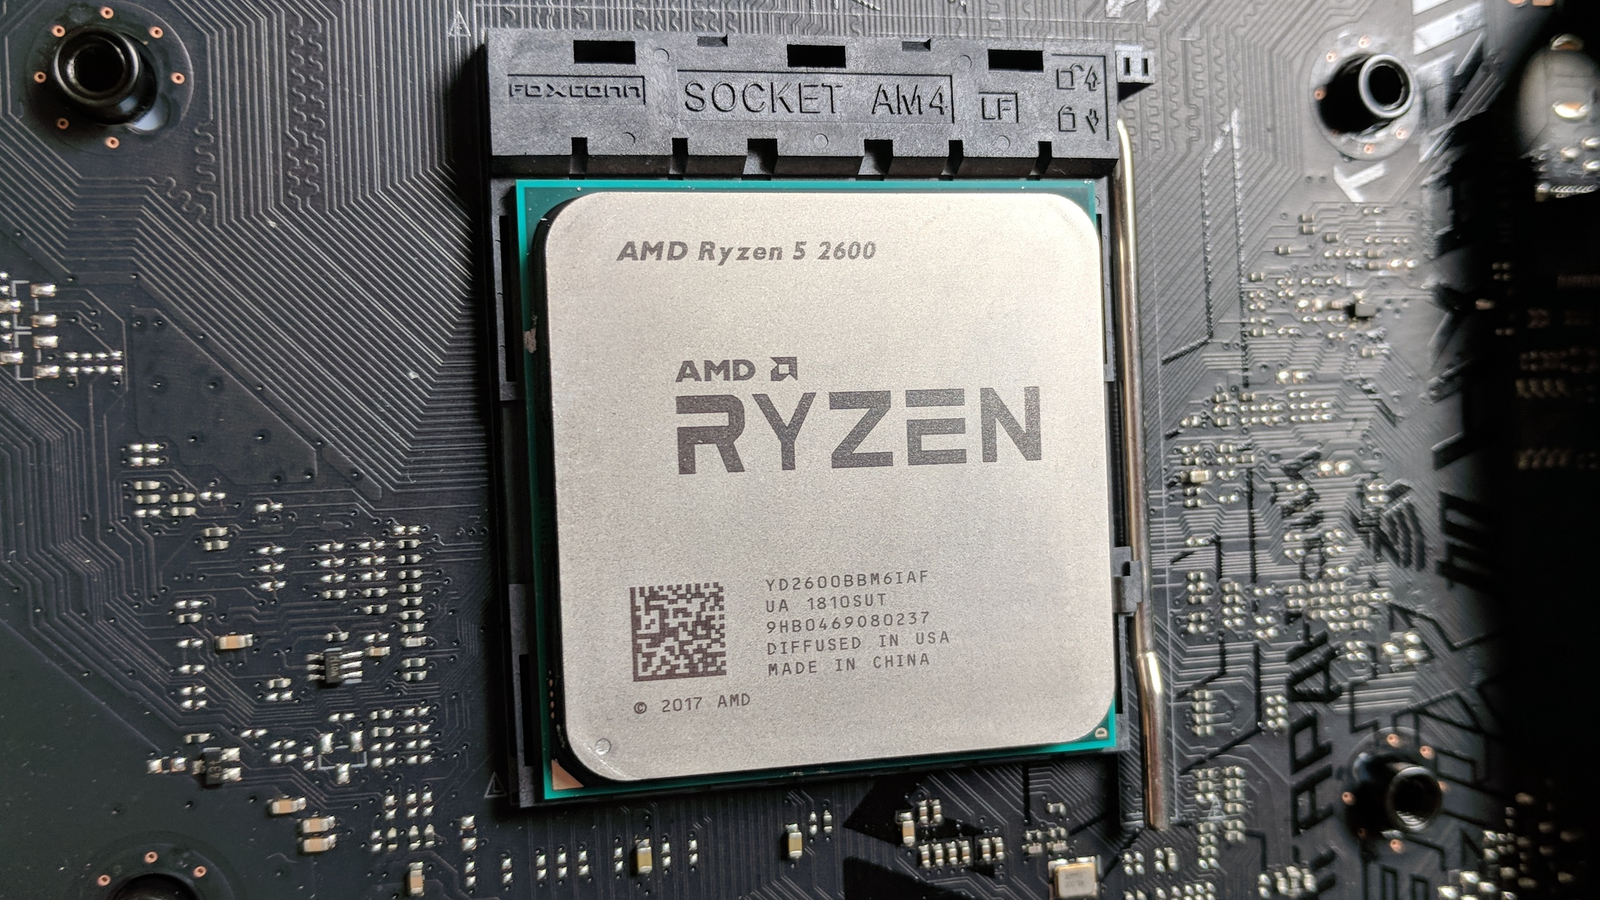 5 5600 сокет. AMD Ryzen 5 2600. Процессор AMD Ryzen 5 2600x. Процессор AMD Ryzen 5 2600 am4. Ryzen 5 2500.